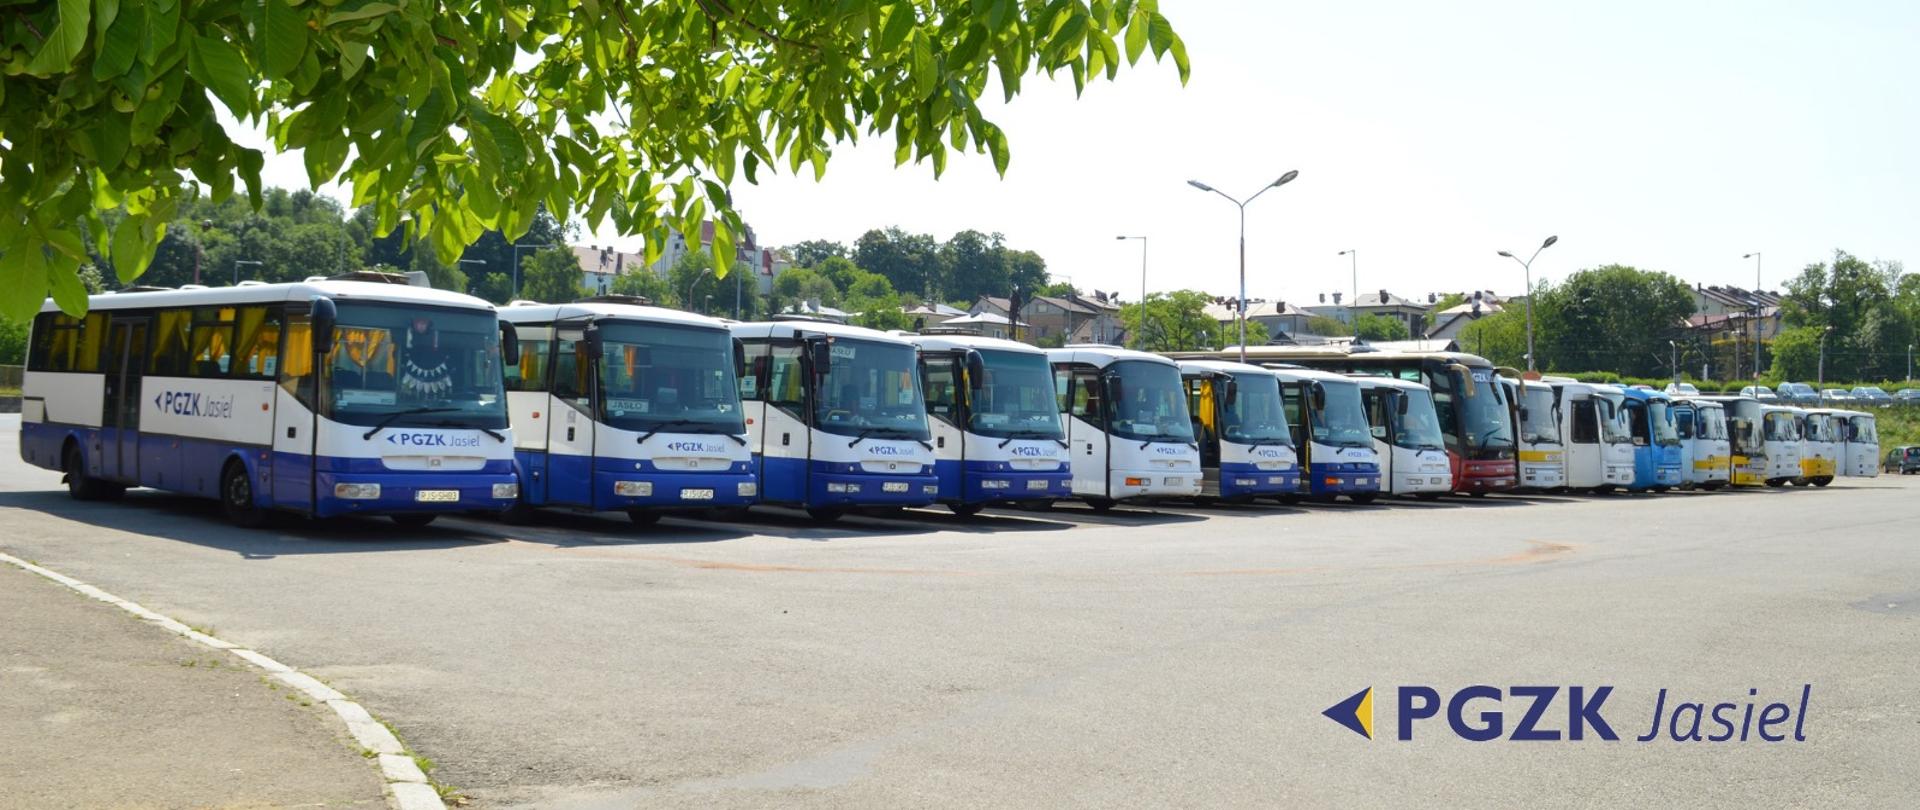 zdjęcie autobusów na stacji pks